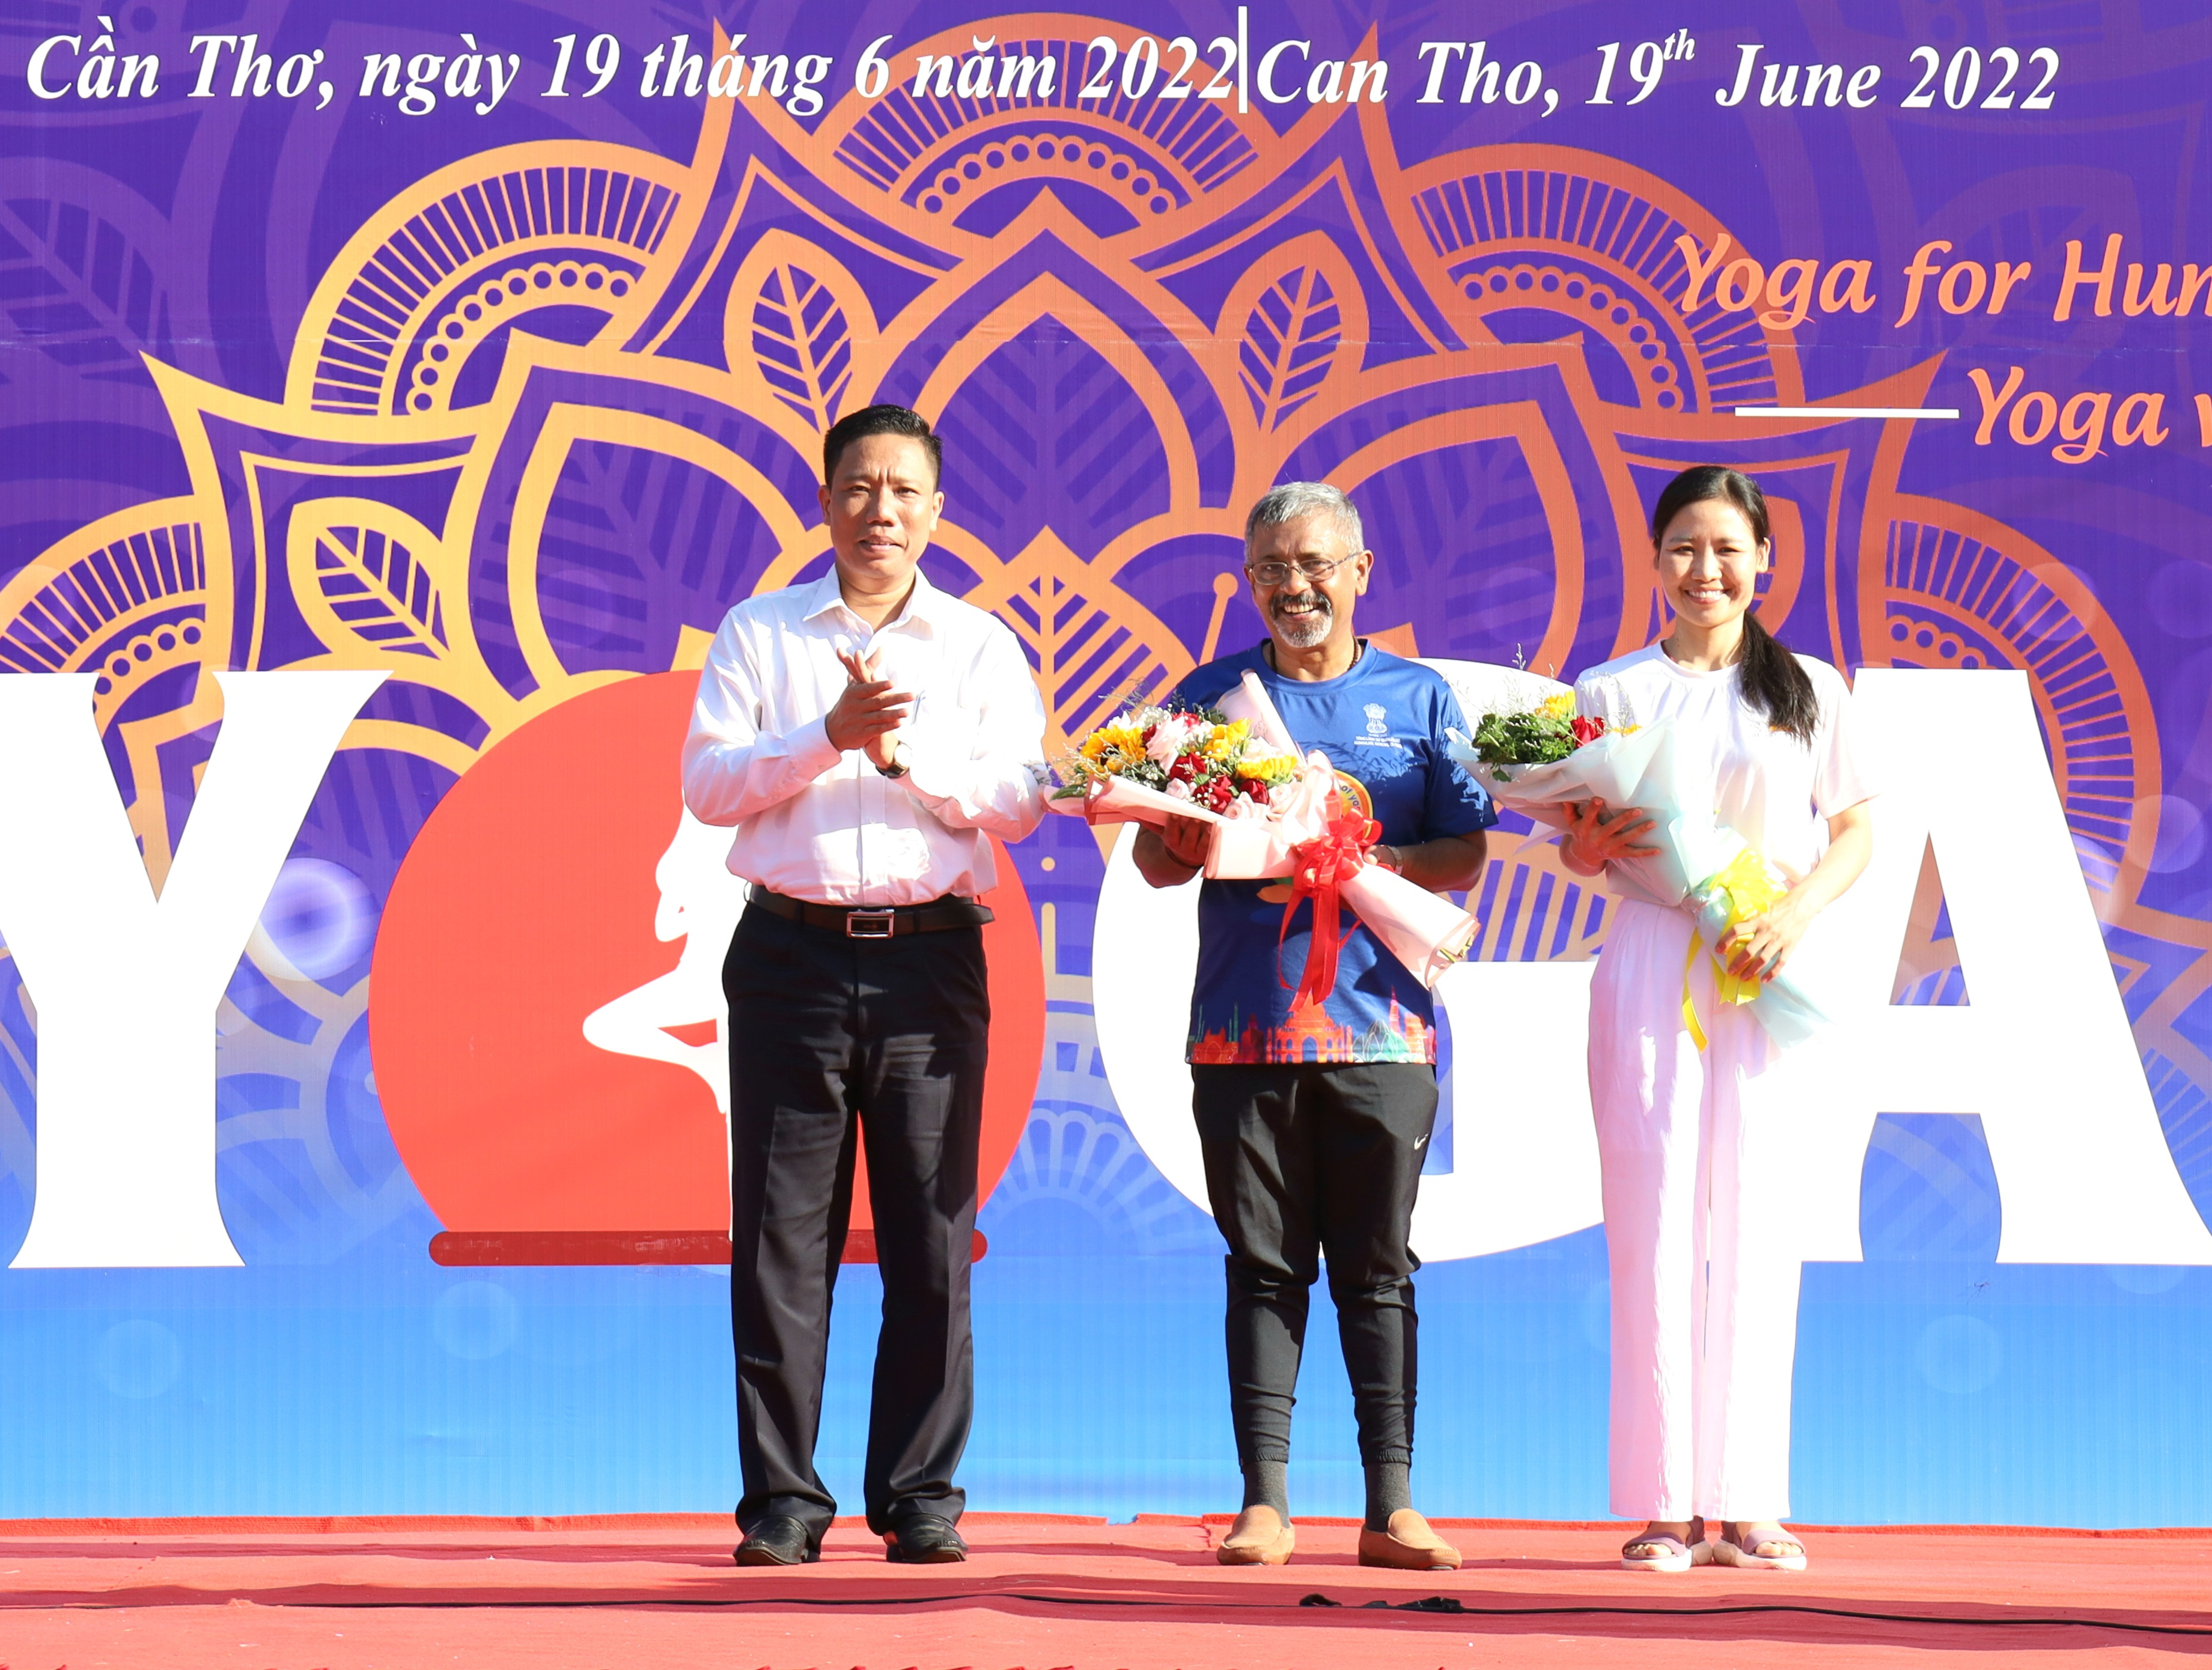 Ông Nguyễn Thực Hiện - Phó Chủ tịch UBND TP. Cần Thơ tặng hoa cho Lãnh sự Ấn Độ và Huấn luyện viên Yoga.